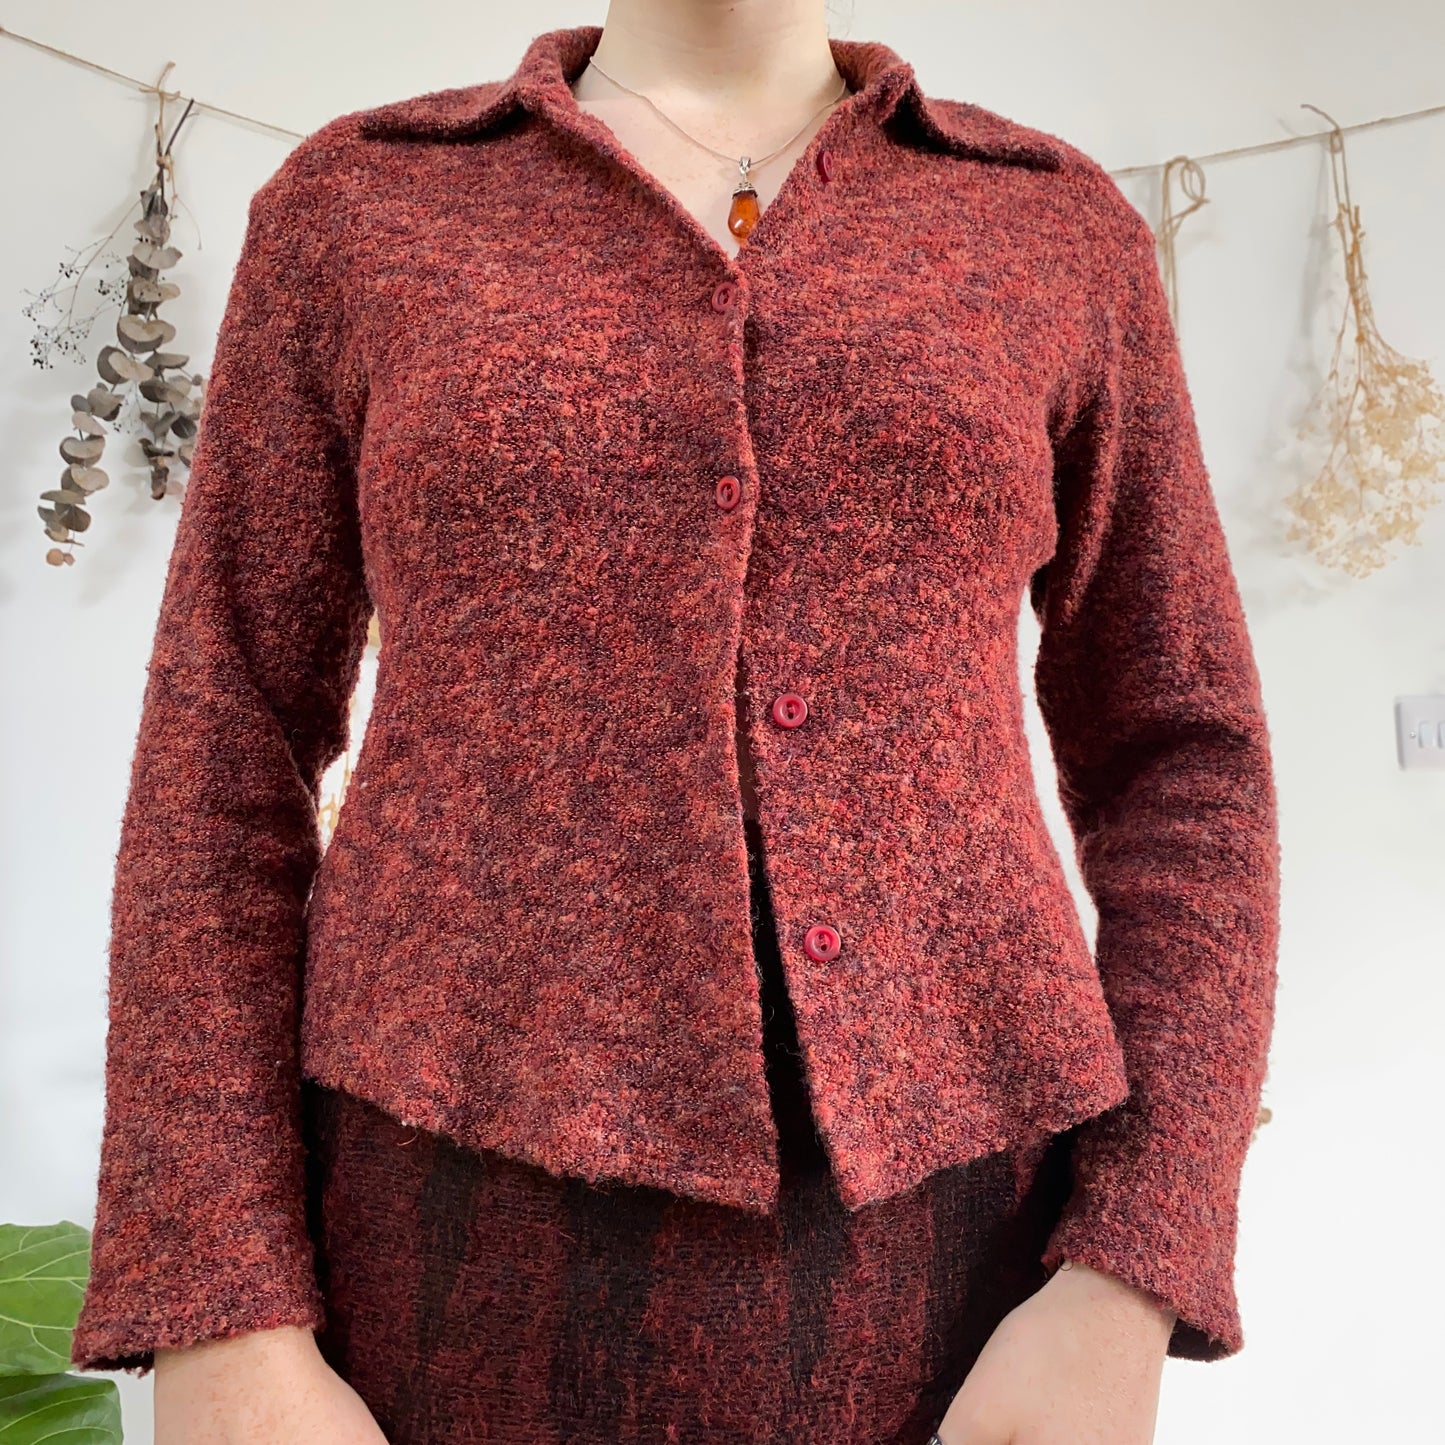 Autumnal knit shirt - size M/L